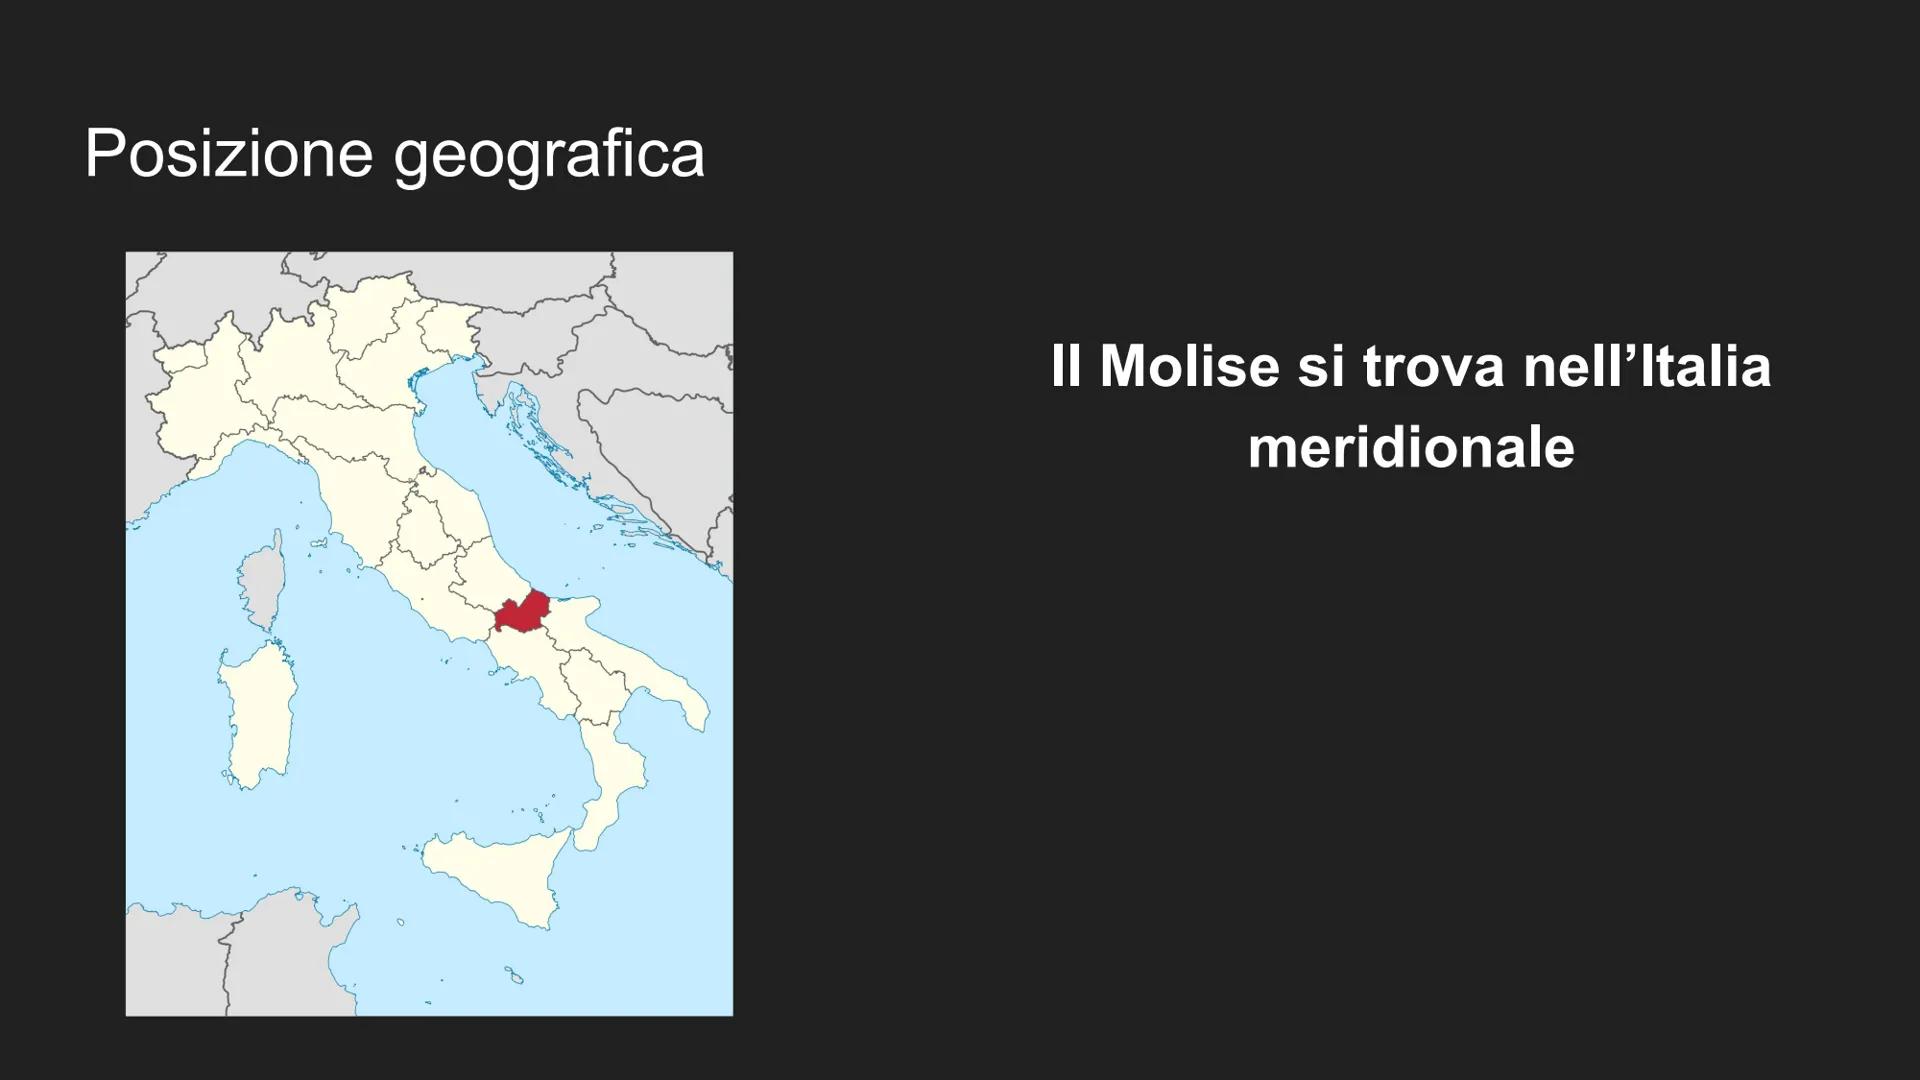 1171459329
Il Molise
gettyimages
Antonia Serena Bove/EyeEm Posizione geografica
Il Molise si trova nell'Italia
meridionale Territorio, fiumi